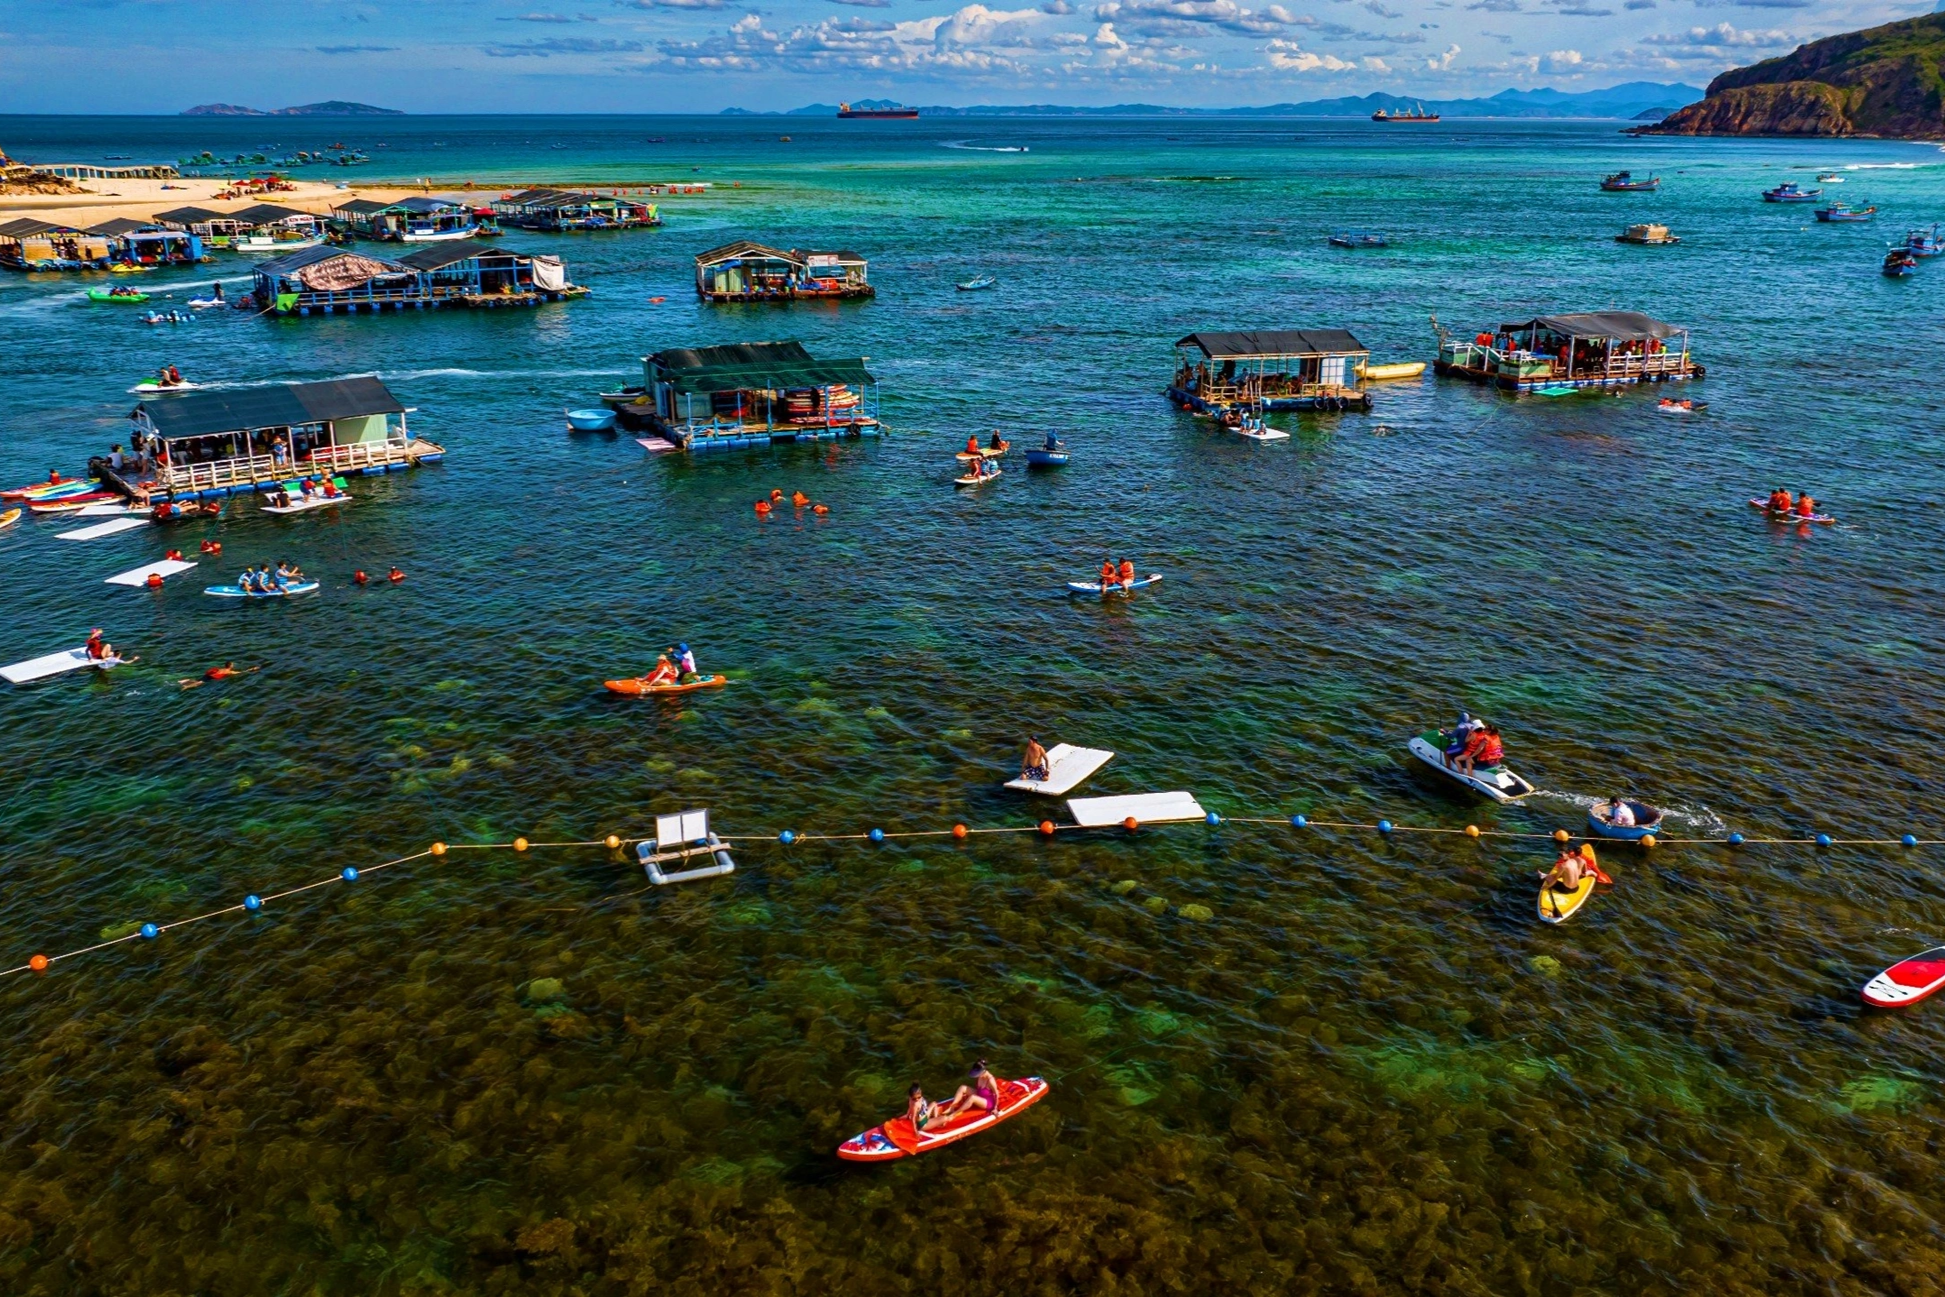 View - Ngất ngây với cánh đồng rong mơ giữa biển ở Quy Nhơn | Báo Dân trí